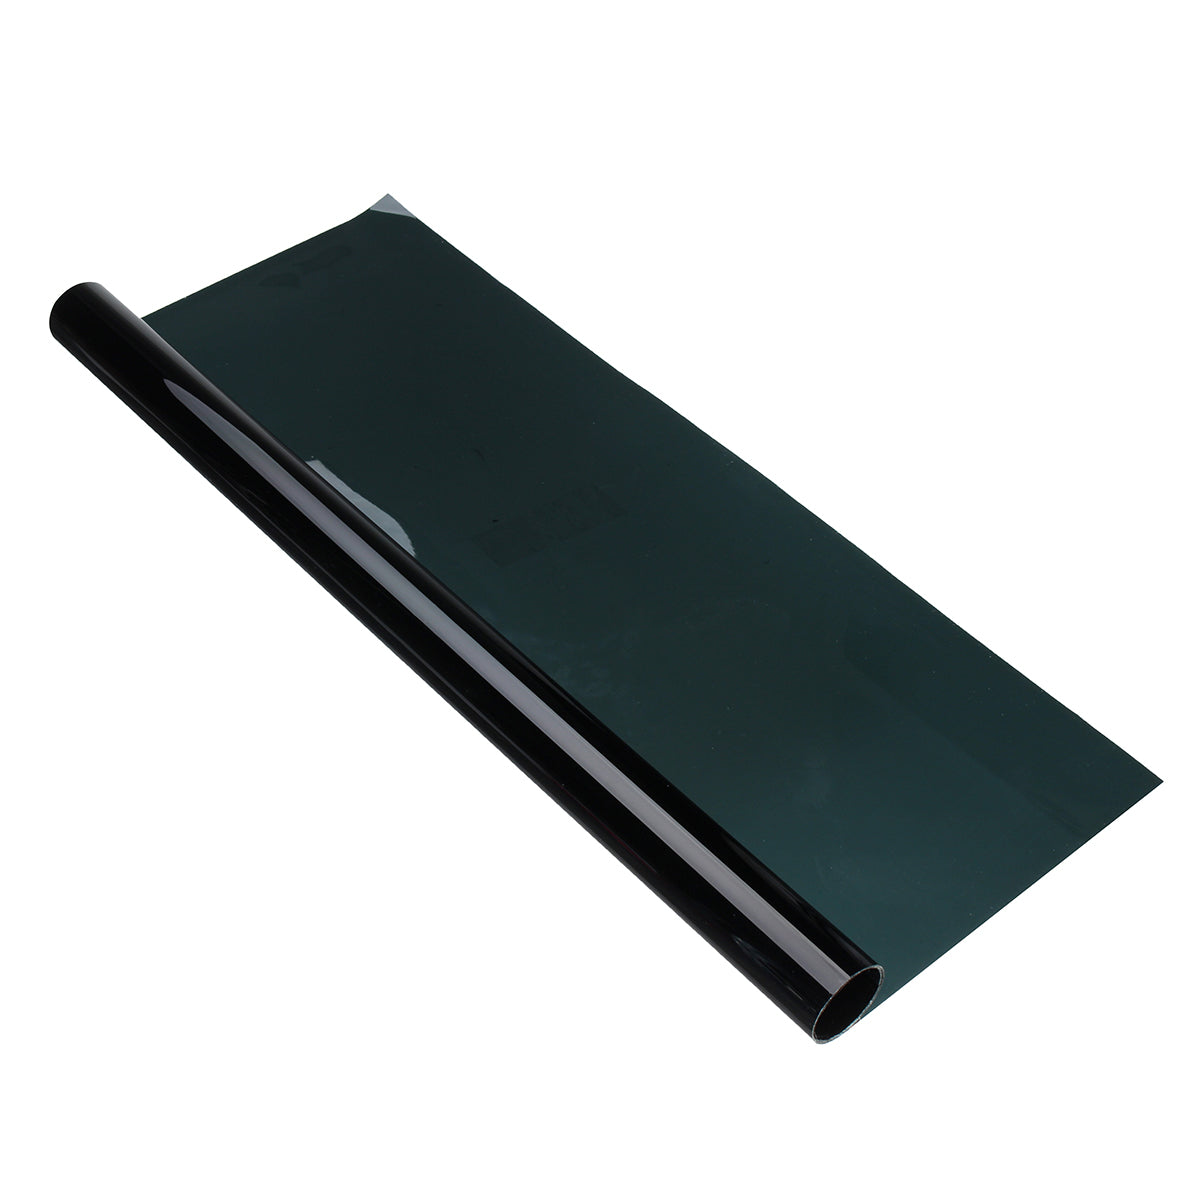 Dark Slate Gray 50cmx2m 5% VLT Black Car Glass Window Tint Shade Film Roll for Home Office Boat